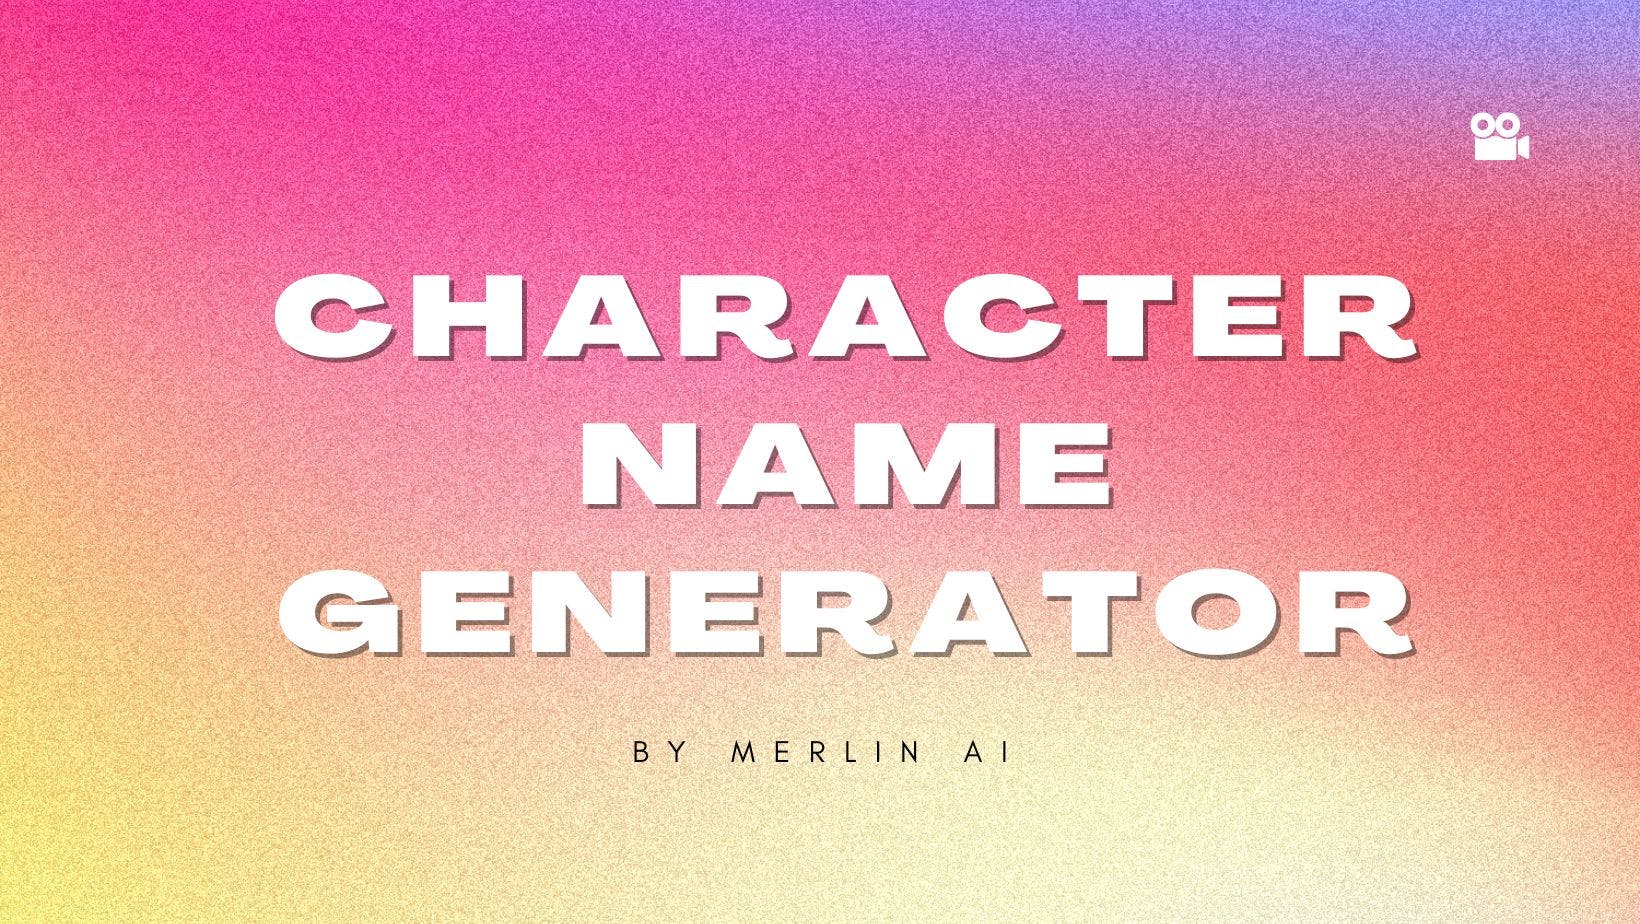 Cover Image for Generador gratuito de nombres de personajes de Merlin AI